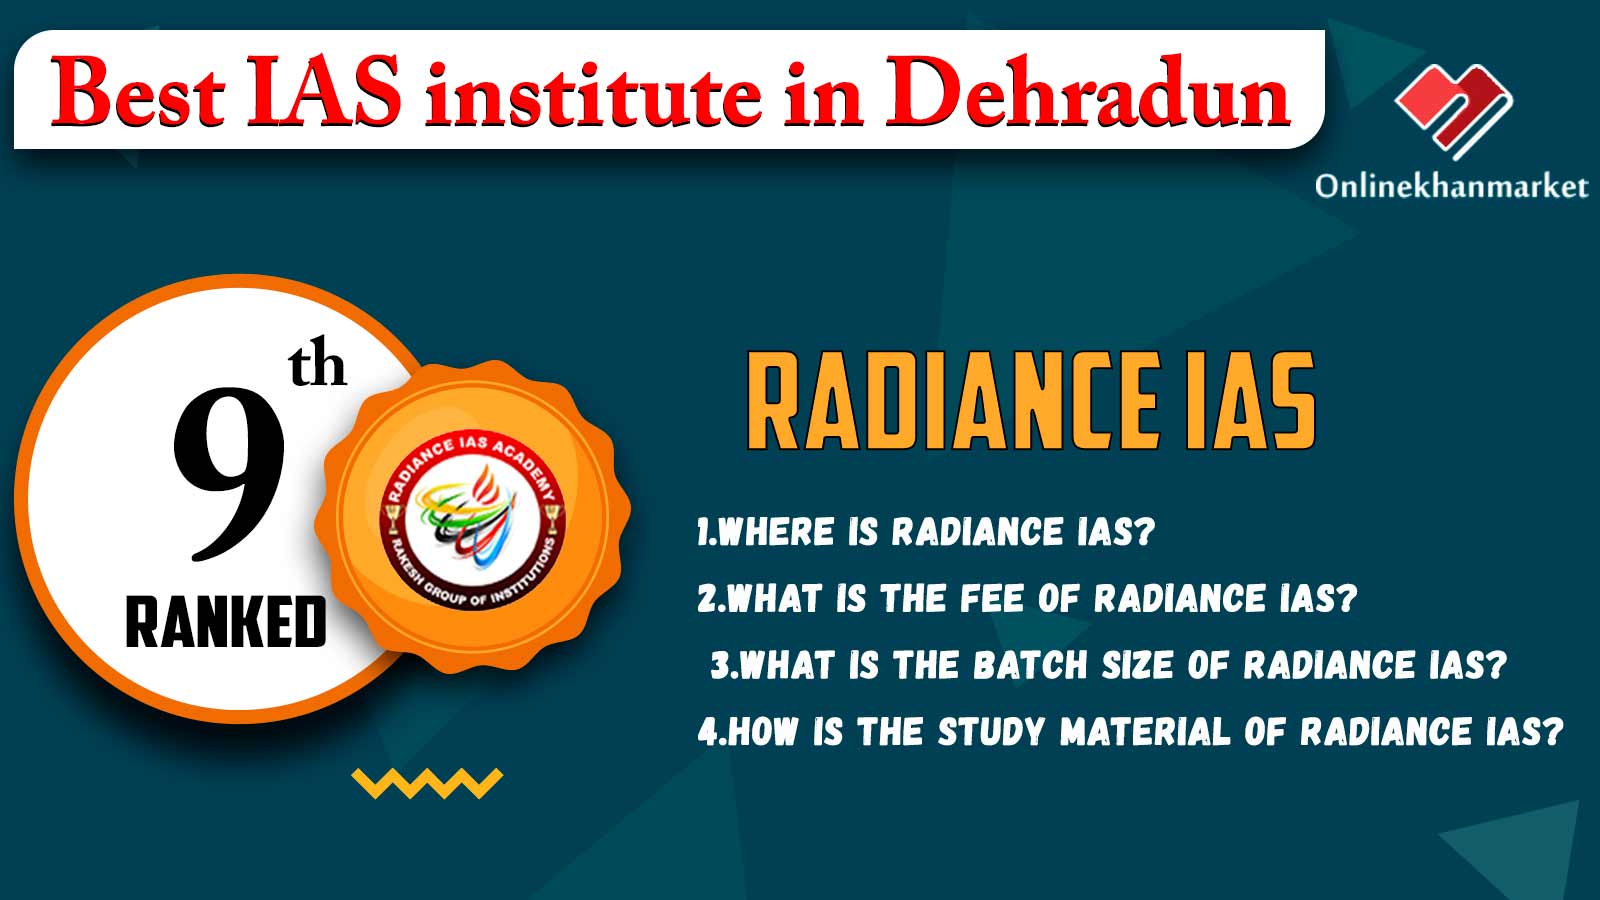 Top IAS Coaching in Dehradun